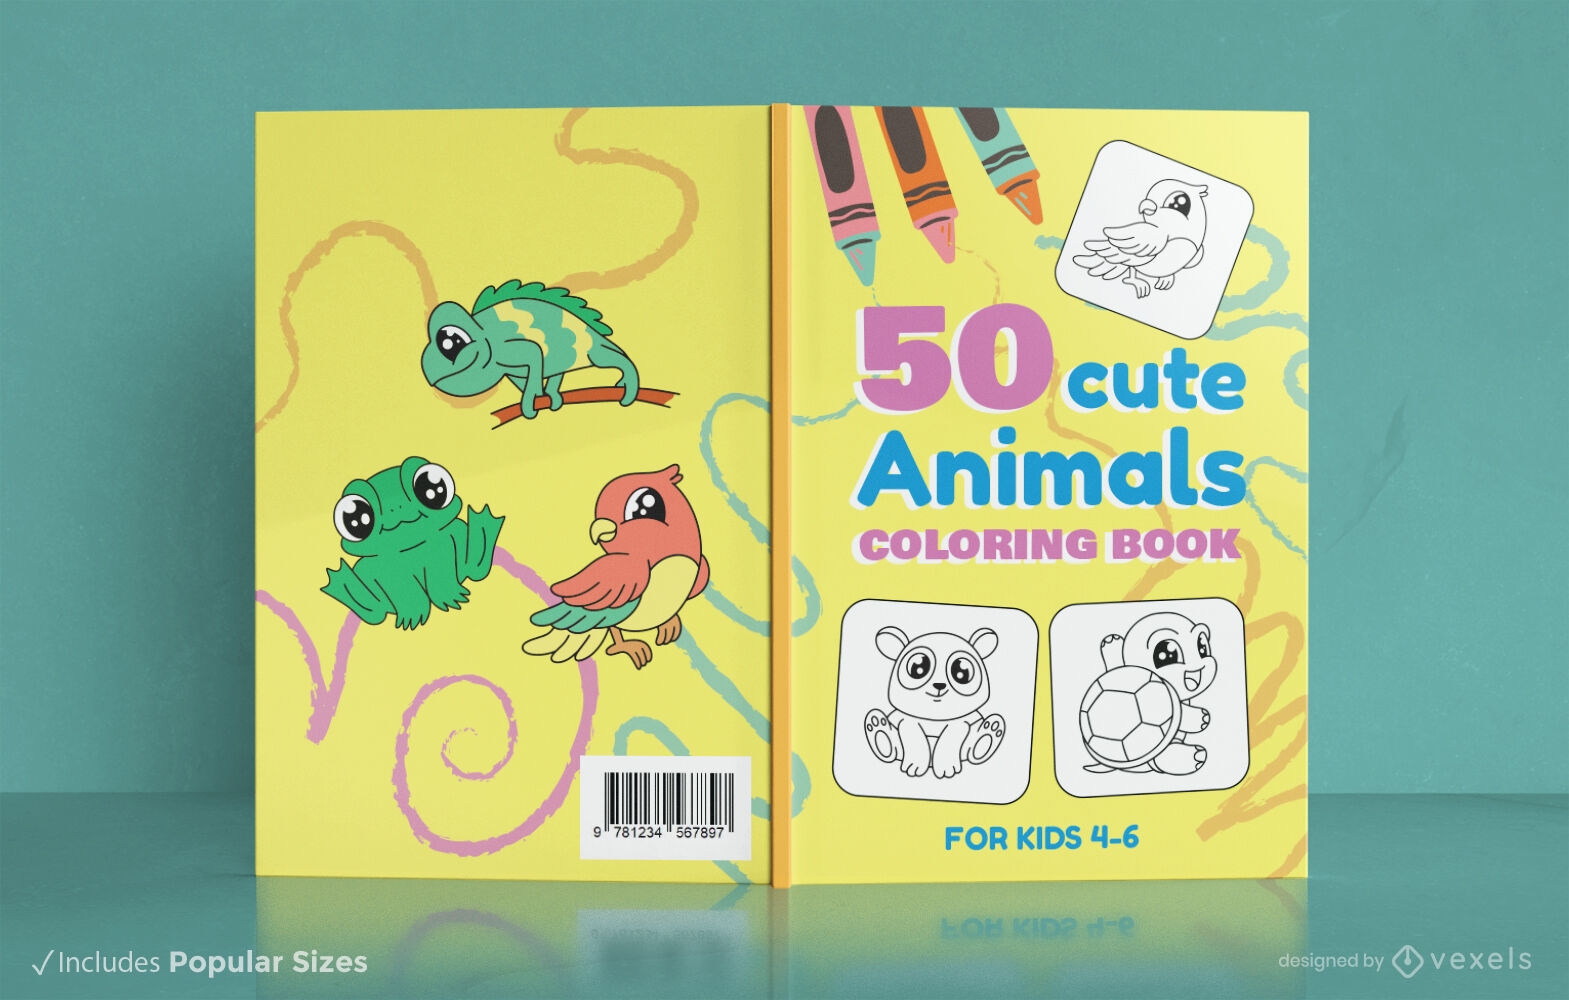 Children's animal coloring book design